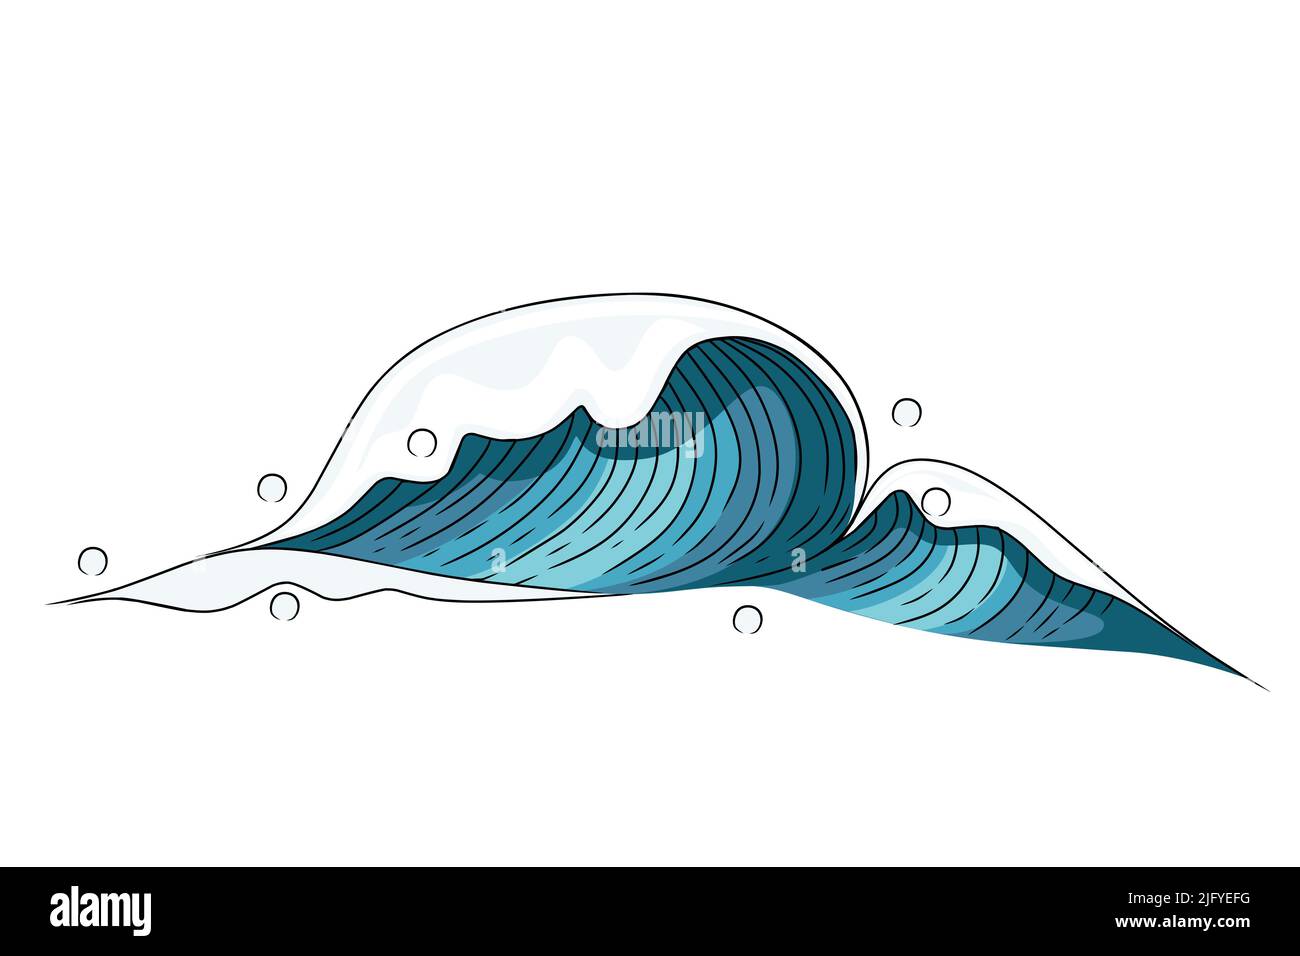 Handgezeichnet Stil Tsunami Welle große blaue Meereswelle in skizzenhaften Stil Vektor-Illustration Skizze Design auf weißem Hintergrund Stock Vektor